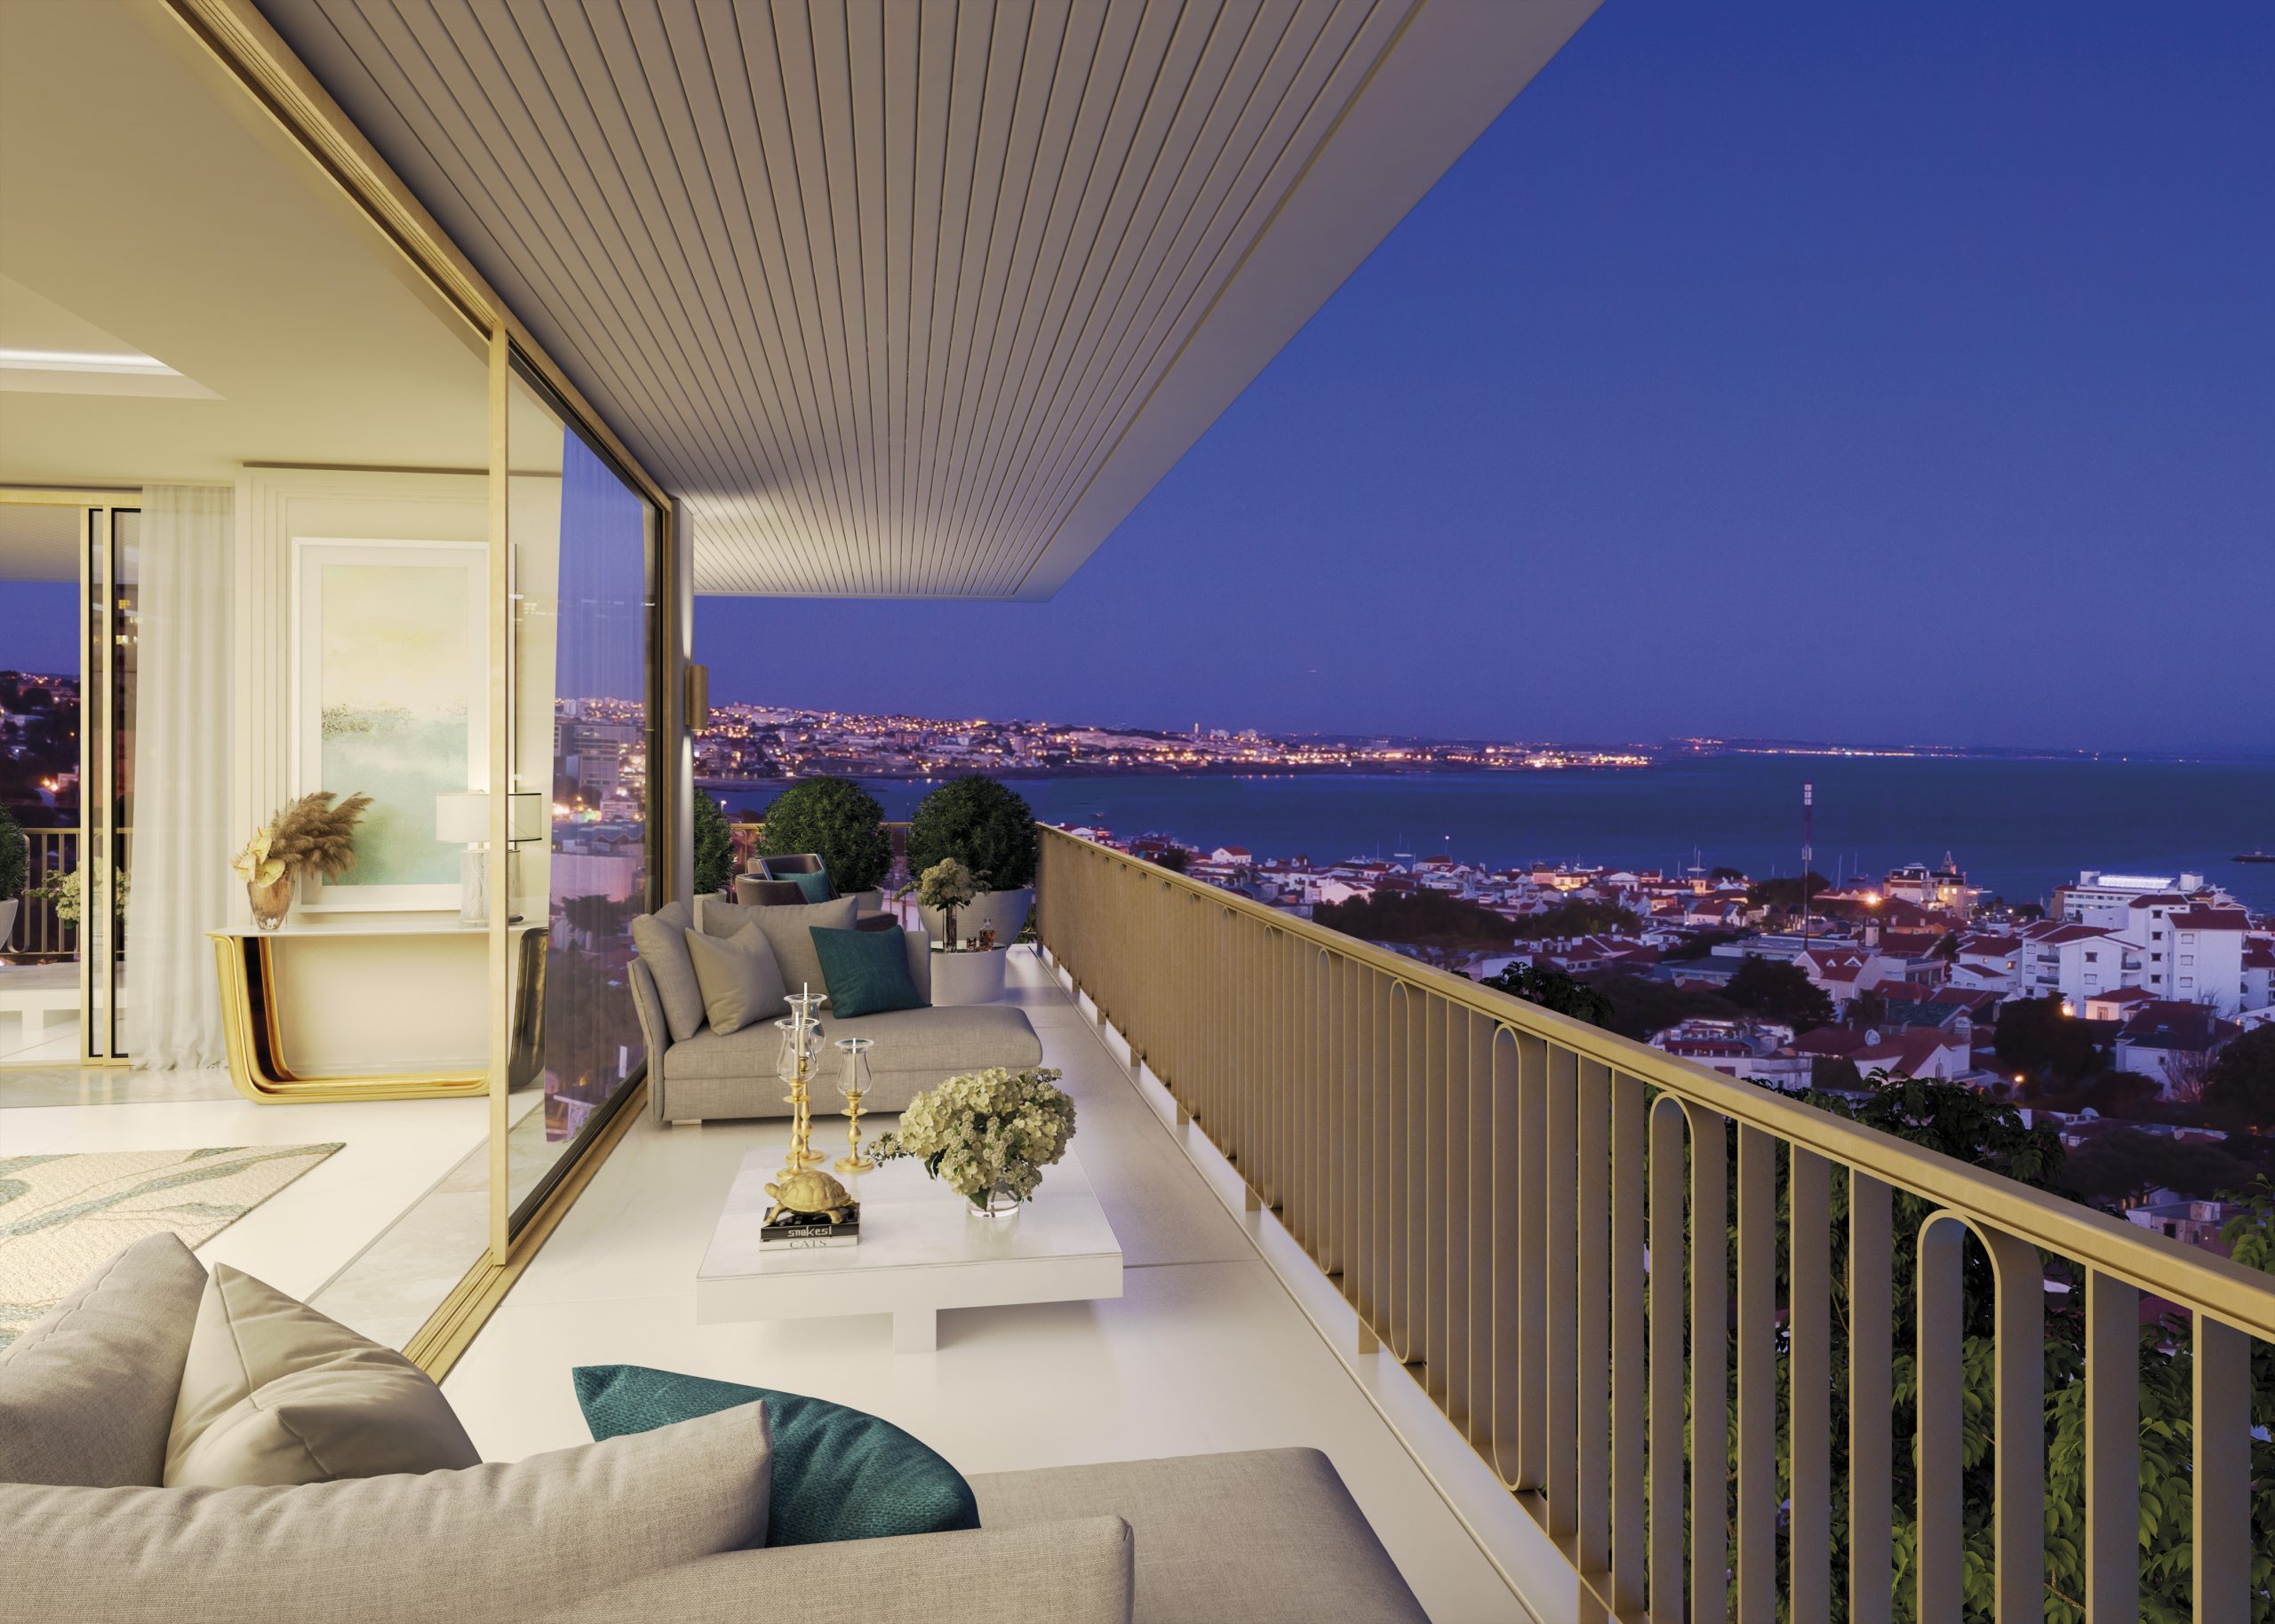 Legacy Residences Penthouse Veranda Night By Gavinho Scaled, Design Authority